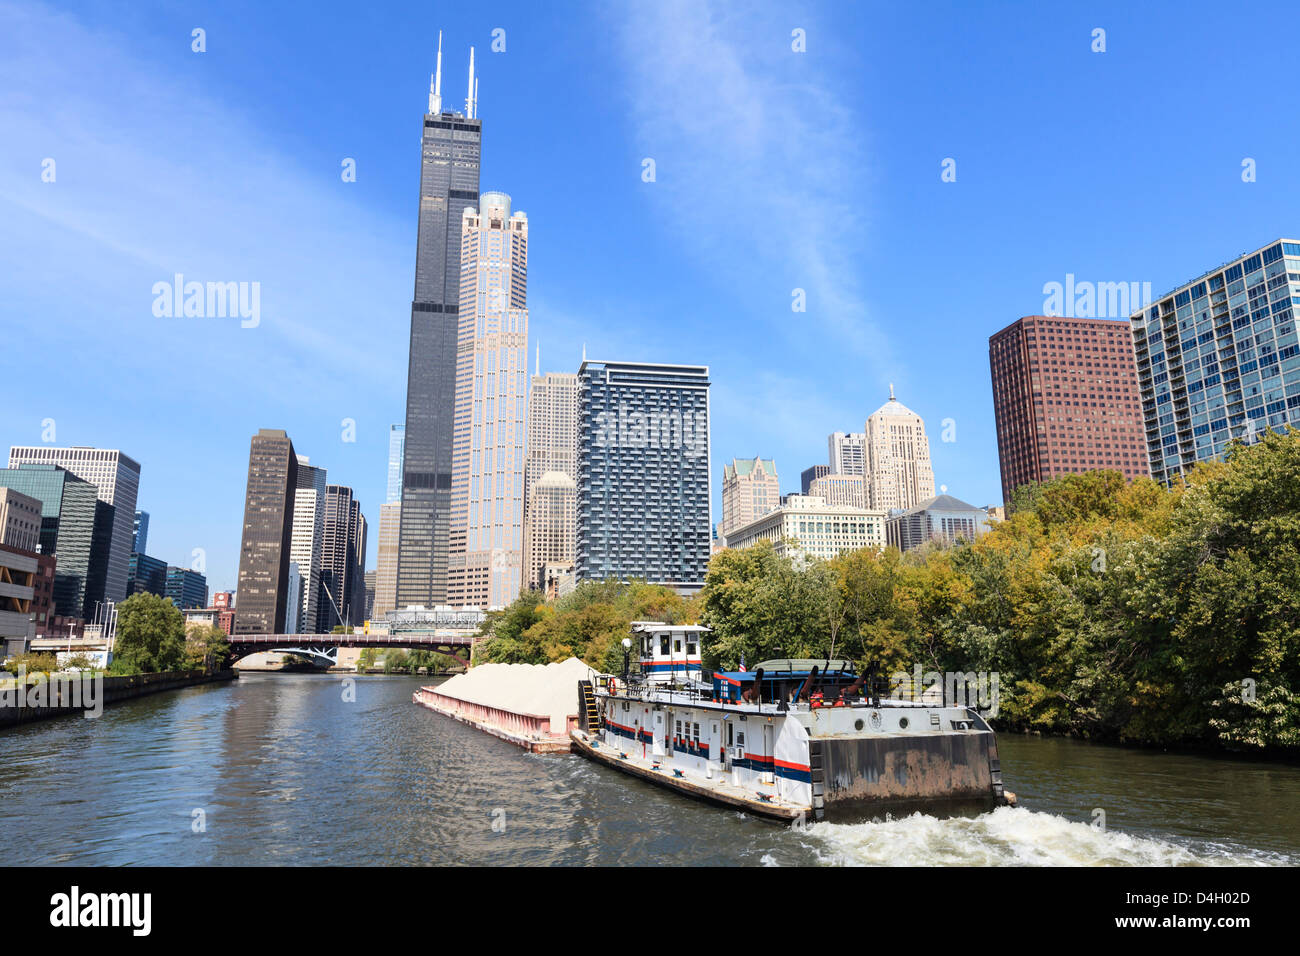 Flussschifffahrt auf dem südlichen Zweig des Chicago Rivers, Willis Tower dominiert die Skyline, Chicago, Illinois, USA Stockfoto